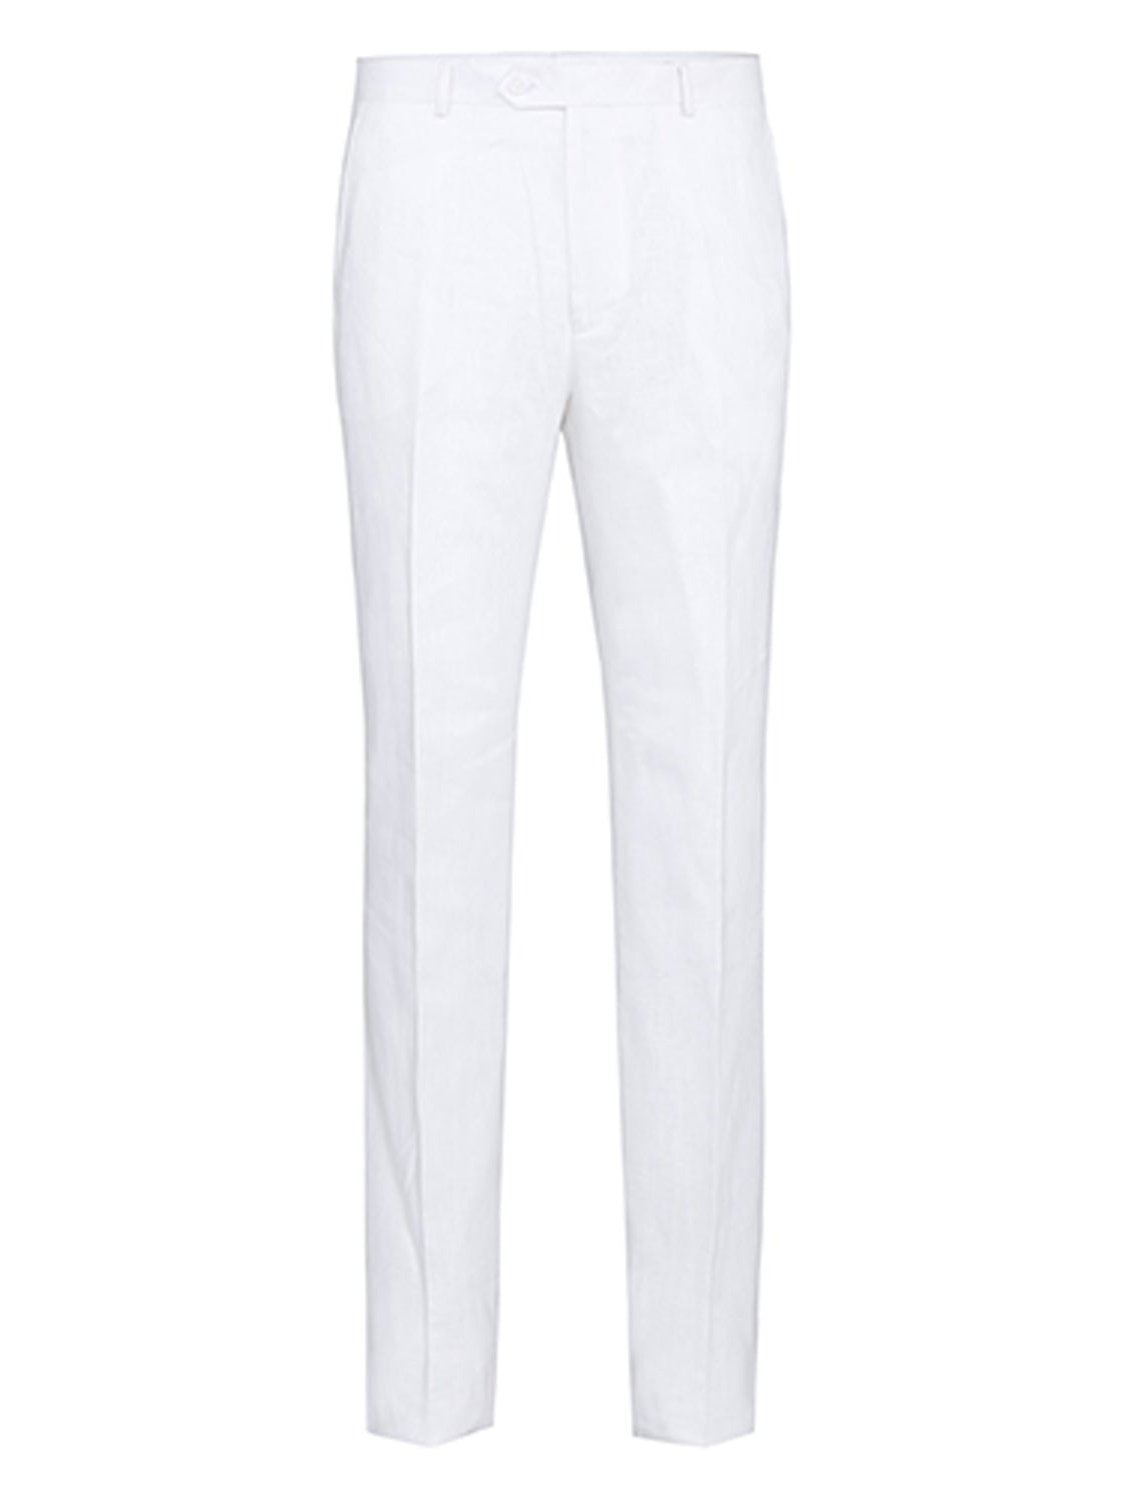 Men&#39;s Notch Lapels White Solid Linen Suits